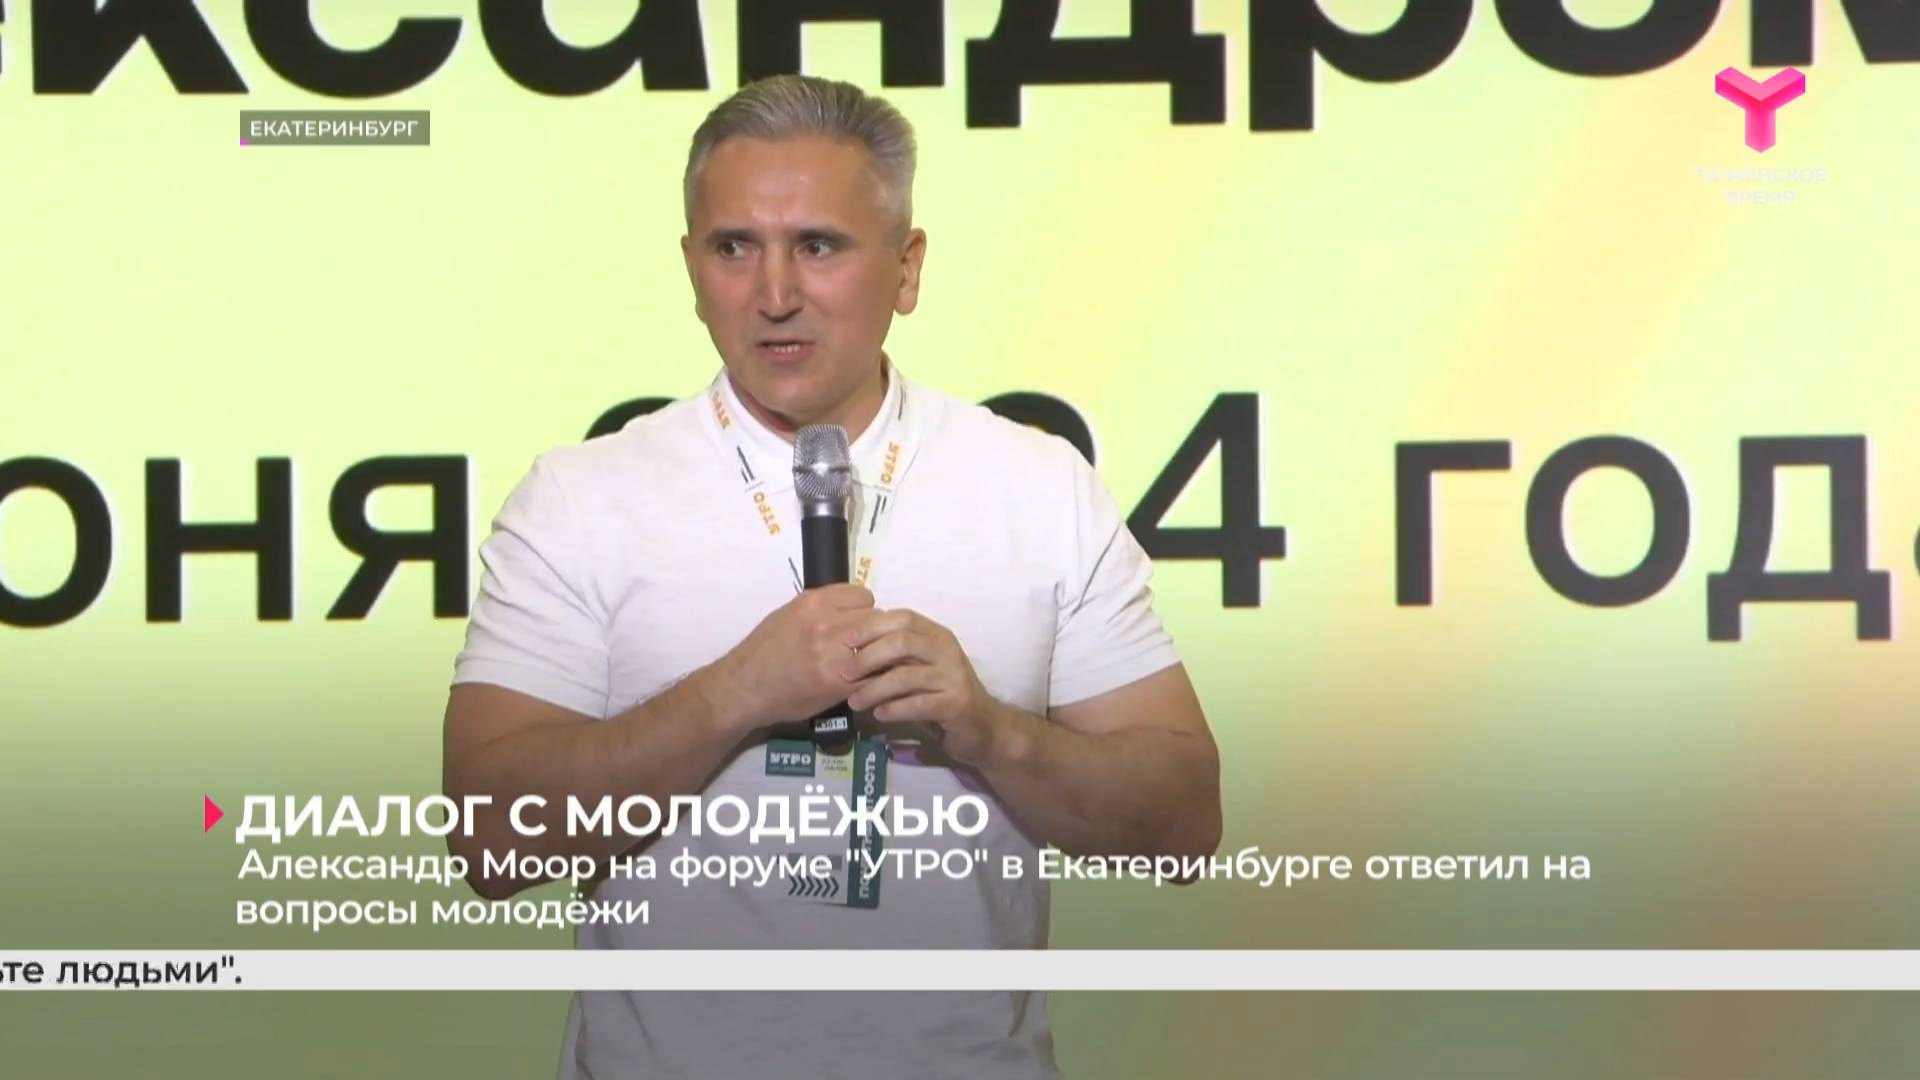 Александр Моор на форуме "УТРО" в Екатеринбурге ответил на вопросы молодёжи